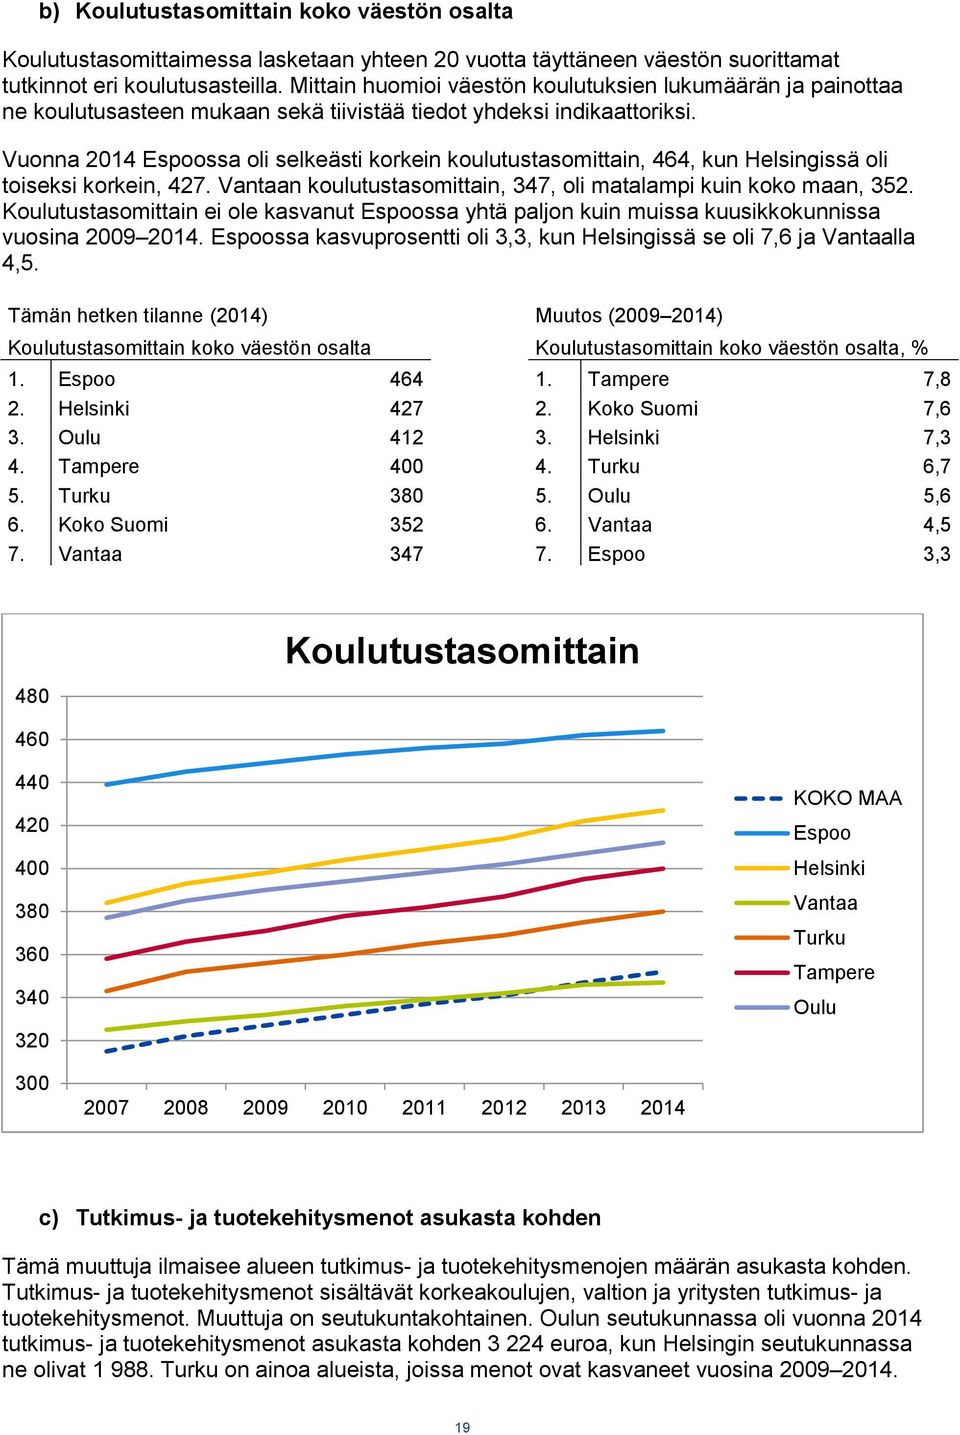 Vuonna 2014 Espoossa oli selkeästi korkein koulutustasomittain, 464, kun Helsingissä oli toiseksi korkein, 427. Vantaan koulutustasomittain, 347, oli matalampi kuin koko maan, 352.